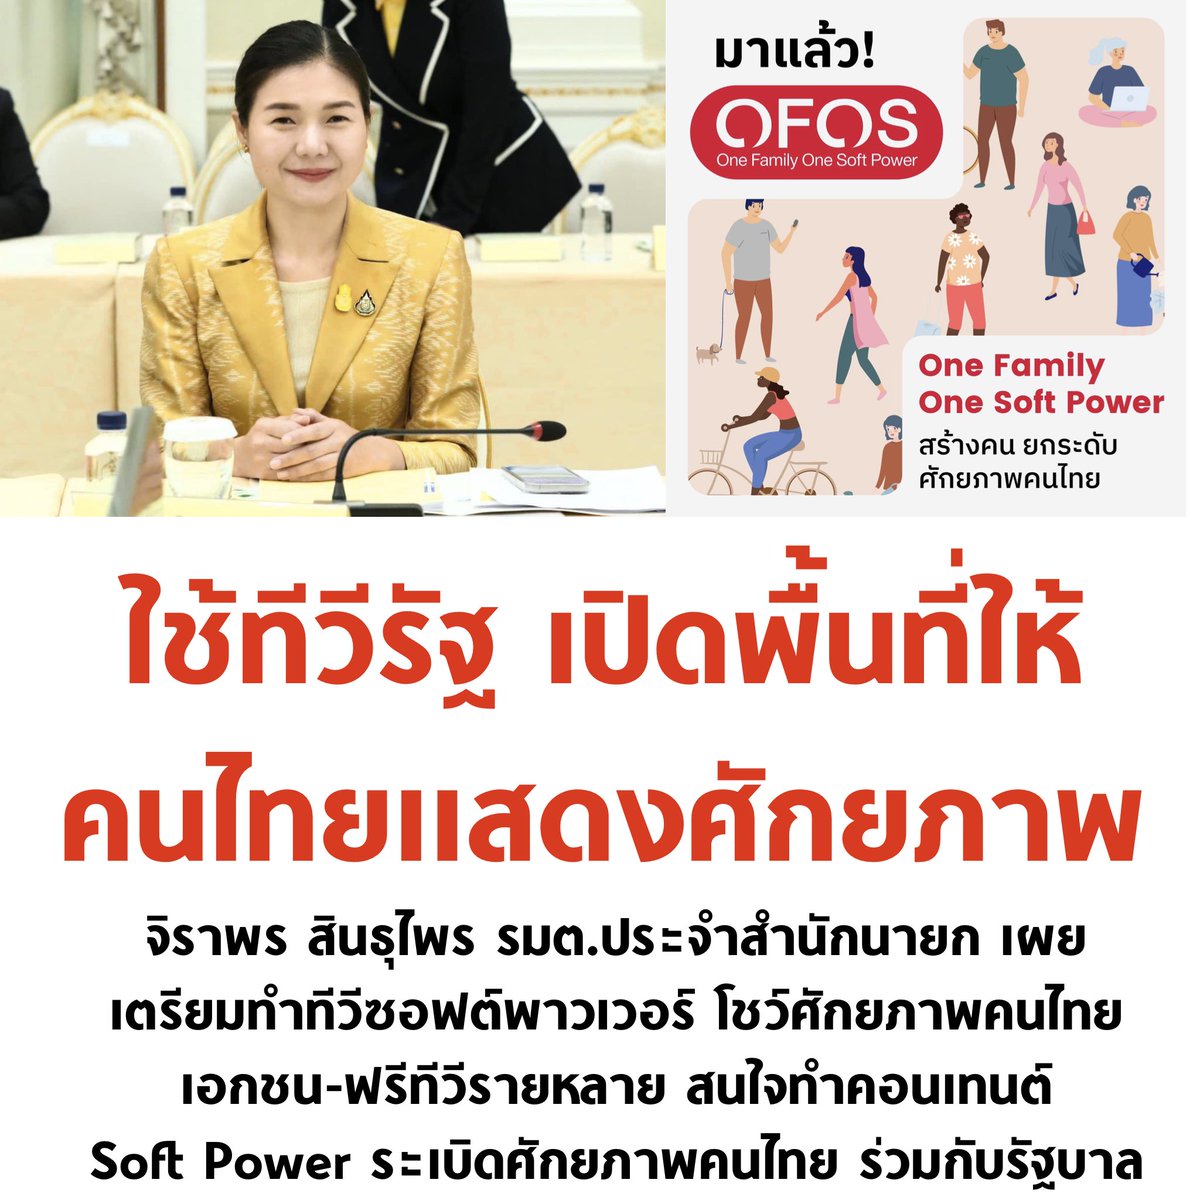 พูดง่ายๆ คือ จะให้คนไทยมาปล่อยของ โชว์ศักยภาพกันโดยรัฐ support พื้นที่ช่องทีวีให้ รอชมเลยครับ ไอเดียความคิดสร้สงสรรค์คนไทย จะปังแค่ไหน

#softpower #จิราพรสินธุไพร